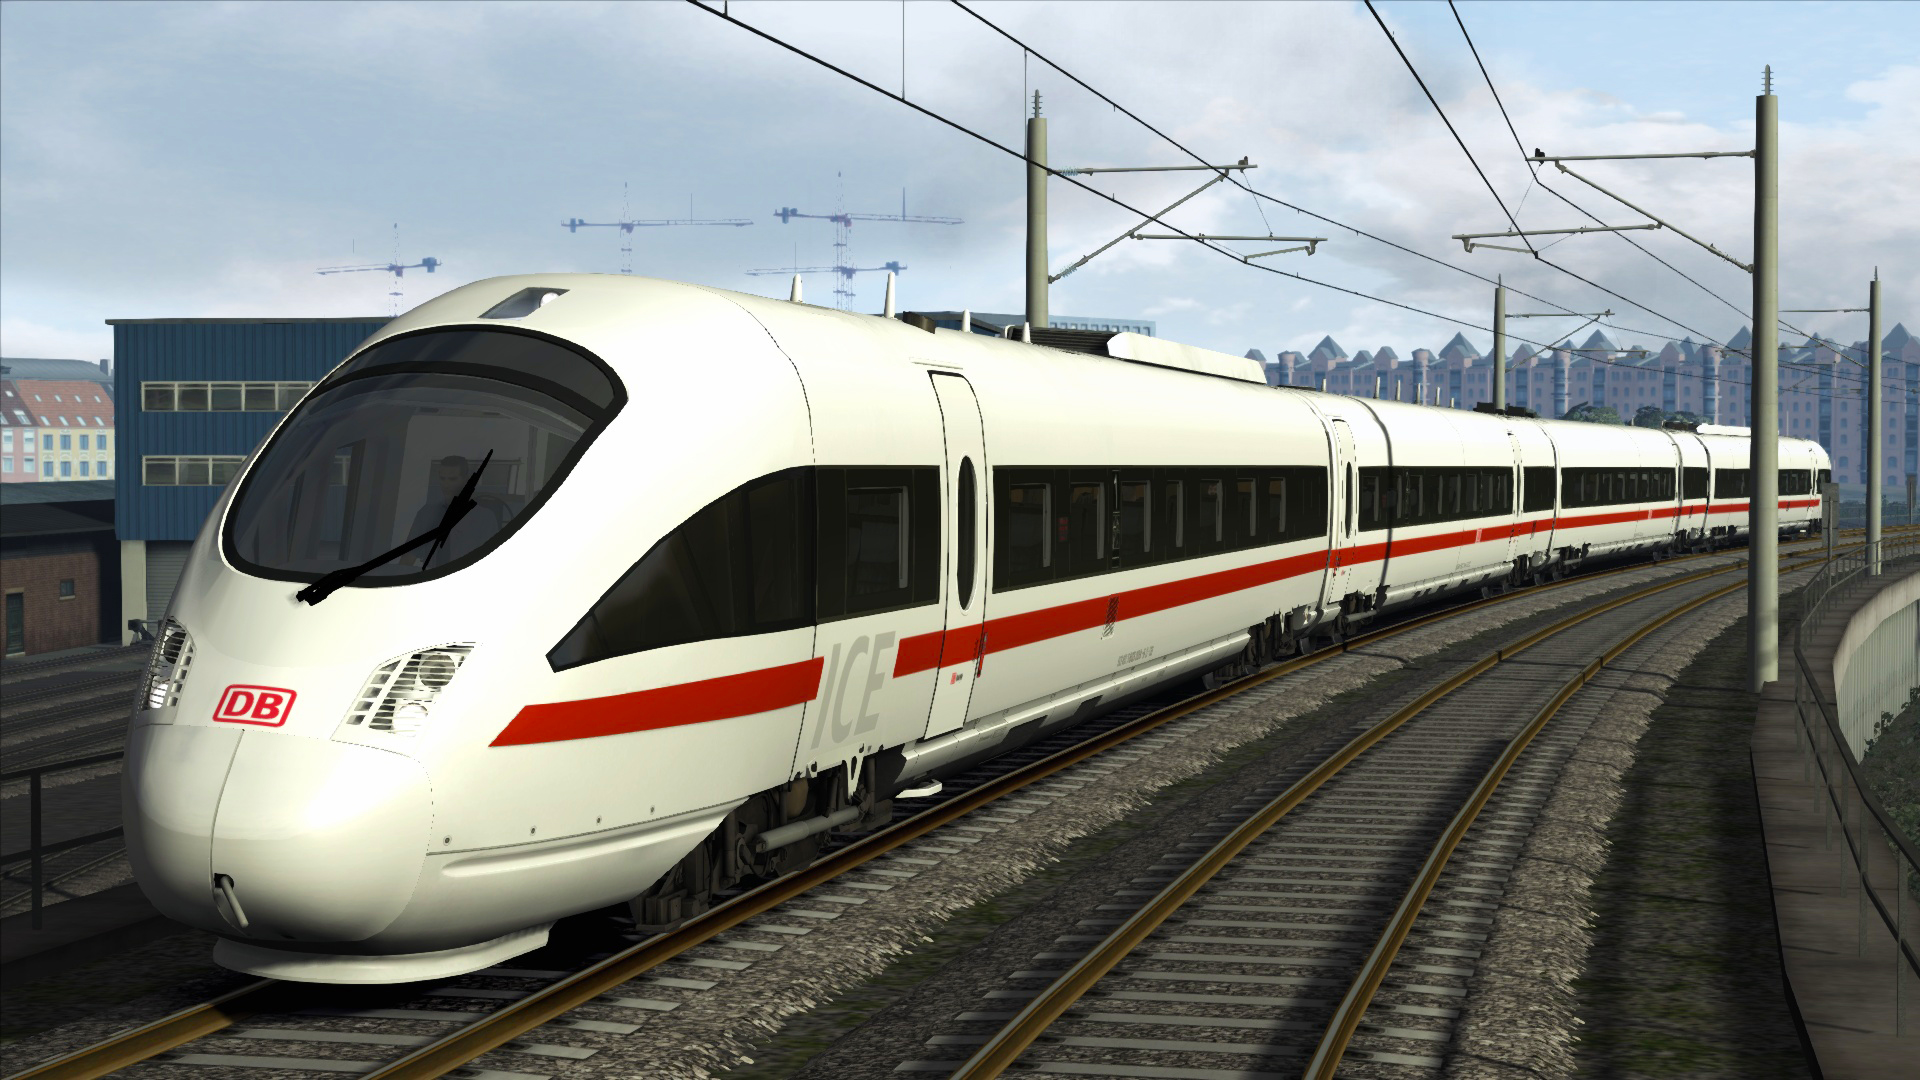 Train Simulator - DB BR 605 ICE TD Add-On DLC Steam CD Key [USD 1.34]